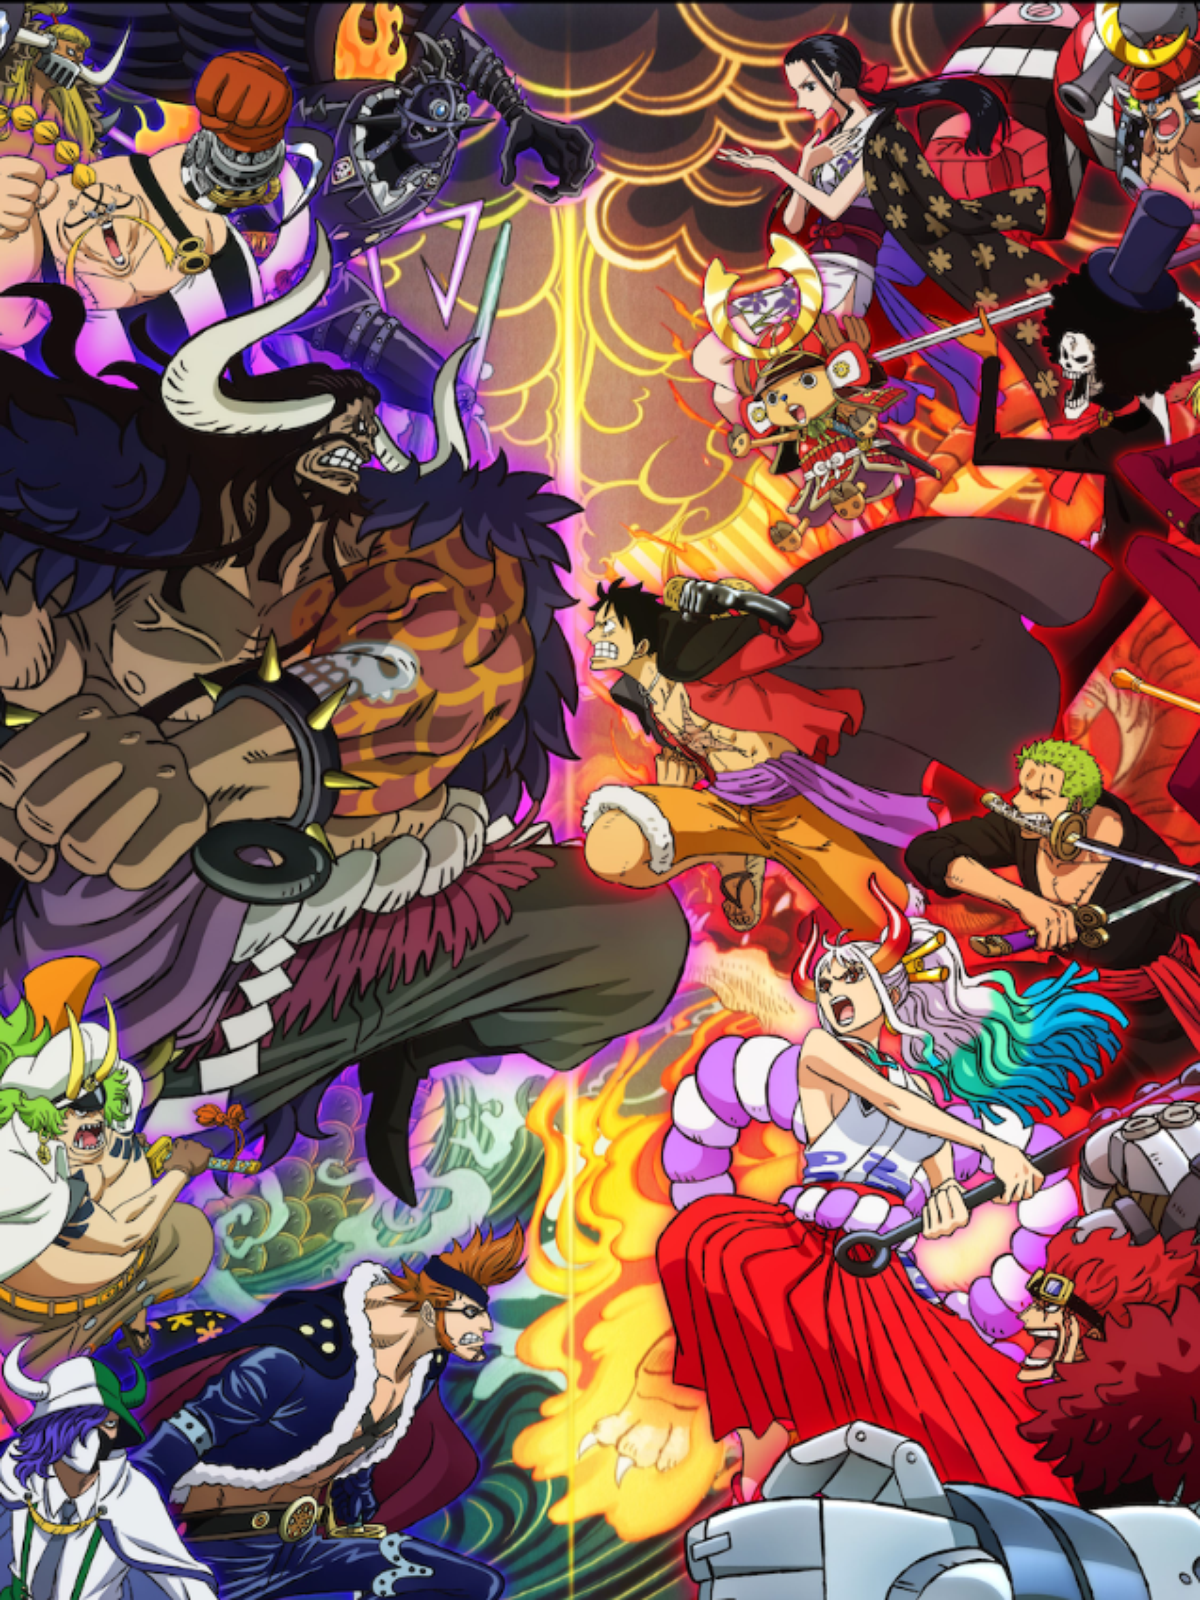 Novo jogo mobile de One Piece #onepiece #anime #game #mobile #mugiwara